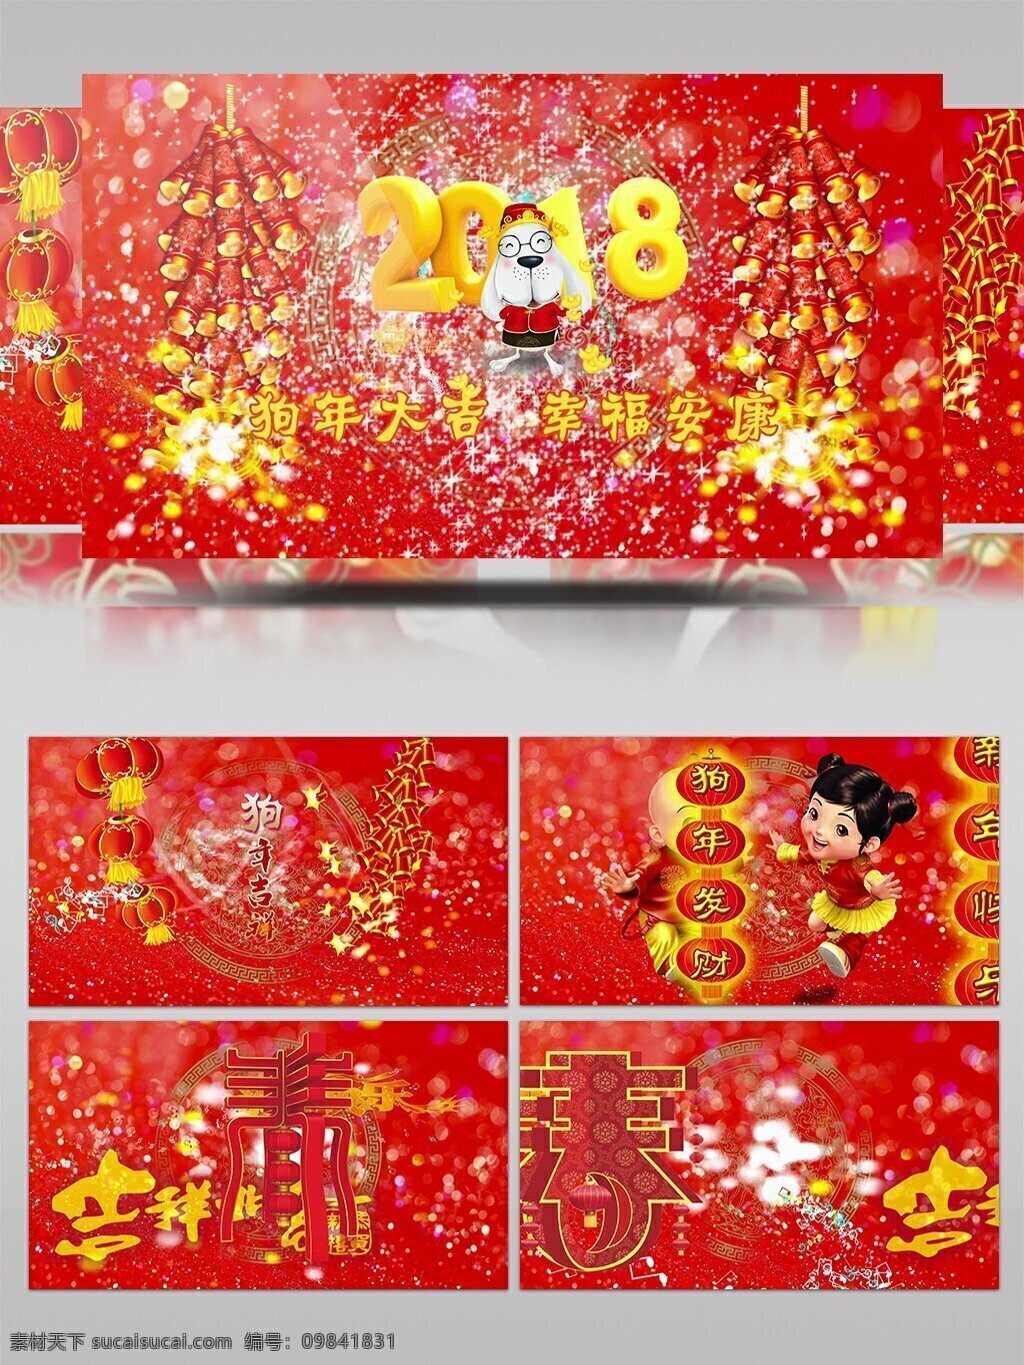 2018 年 狗年 大吉 春节 拜年 祝福 ae 模板 节日 红色 中国风 新春 庆祝 新年